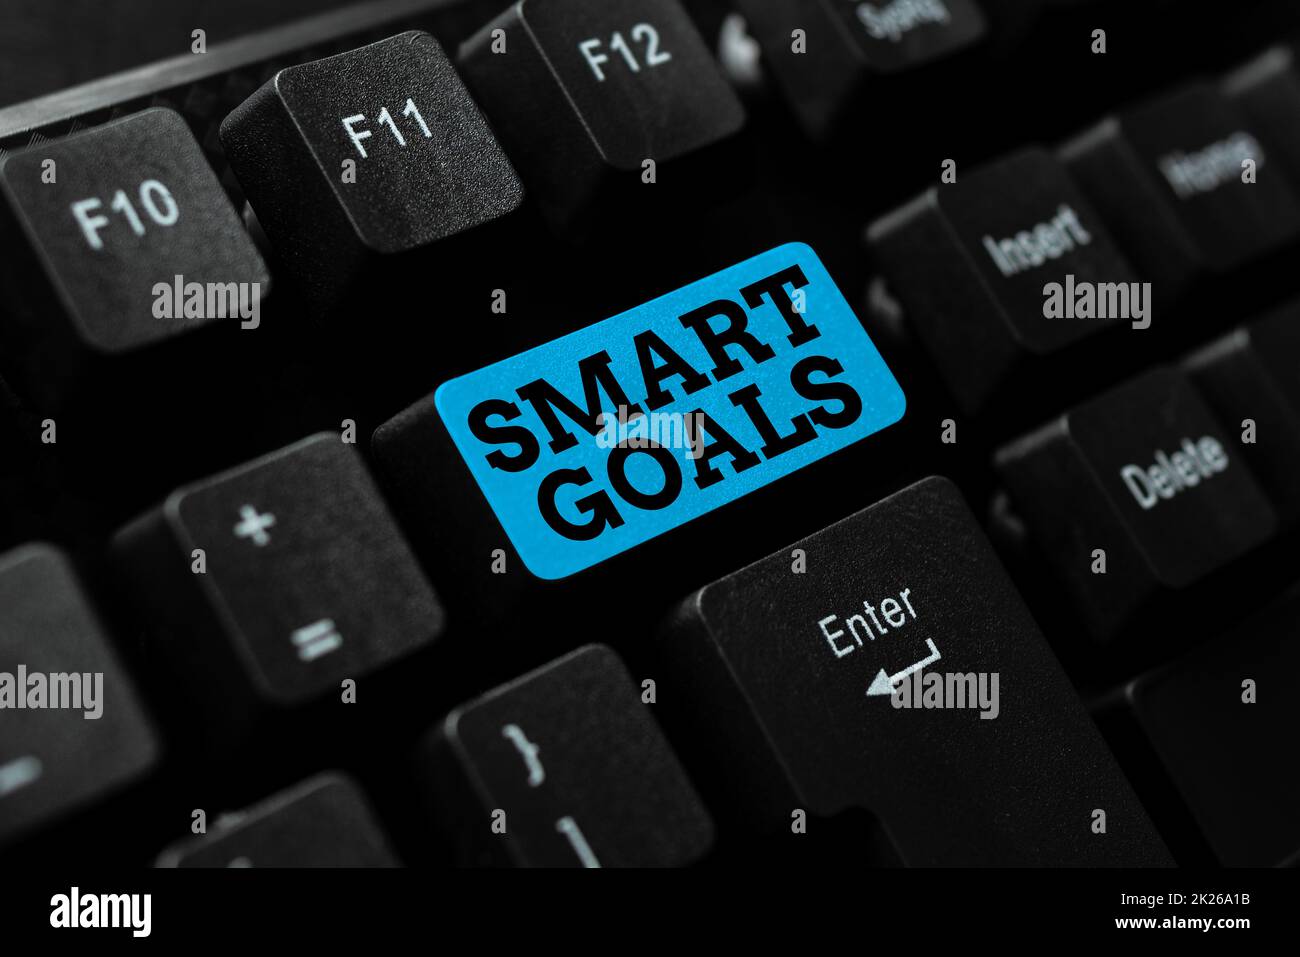 Scrittura di testo con gli Smart Goals. Business showcase mnemonic utilizzato come base per la definizione di obiettivi e direzione Abstract Office digitando lavori, scrivere rapporti di lavoro importanti Foto Stock